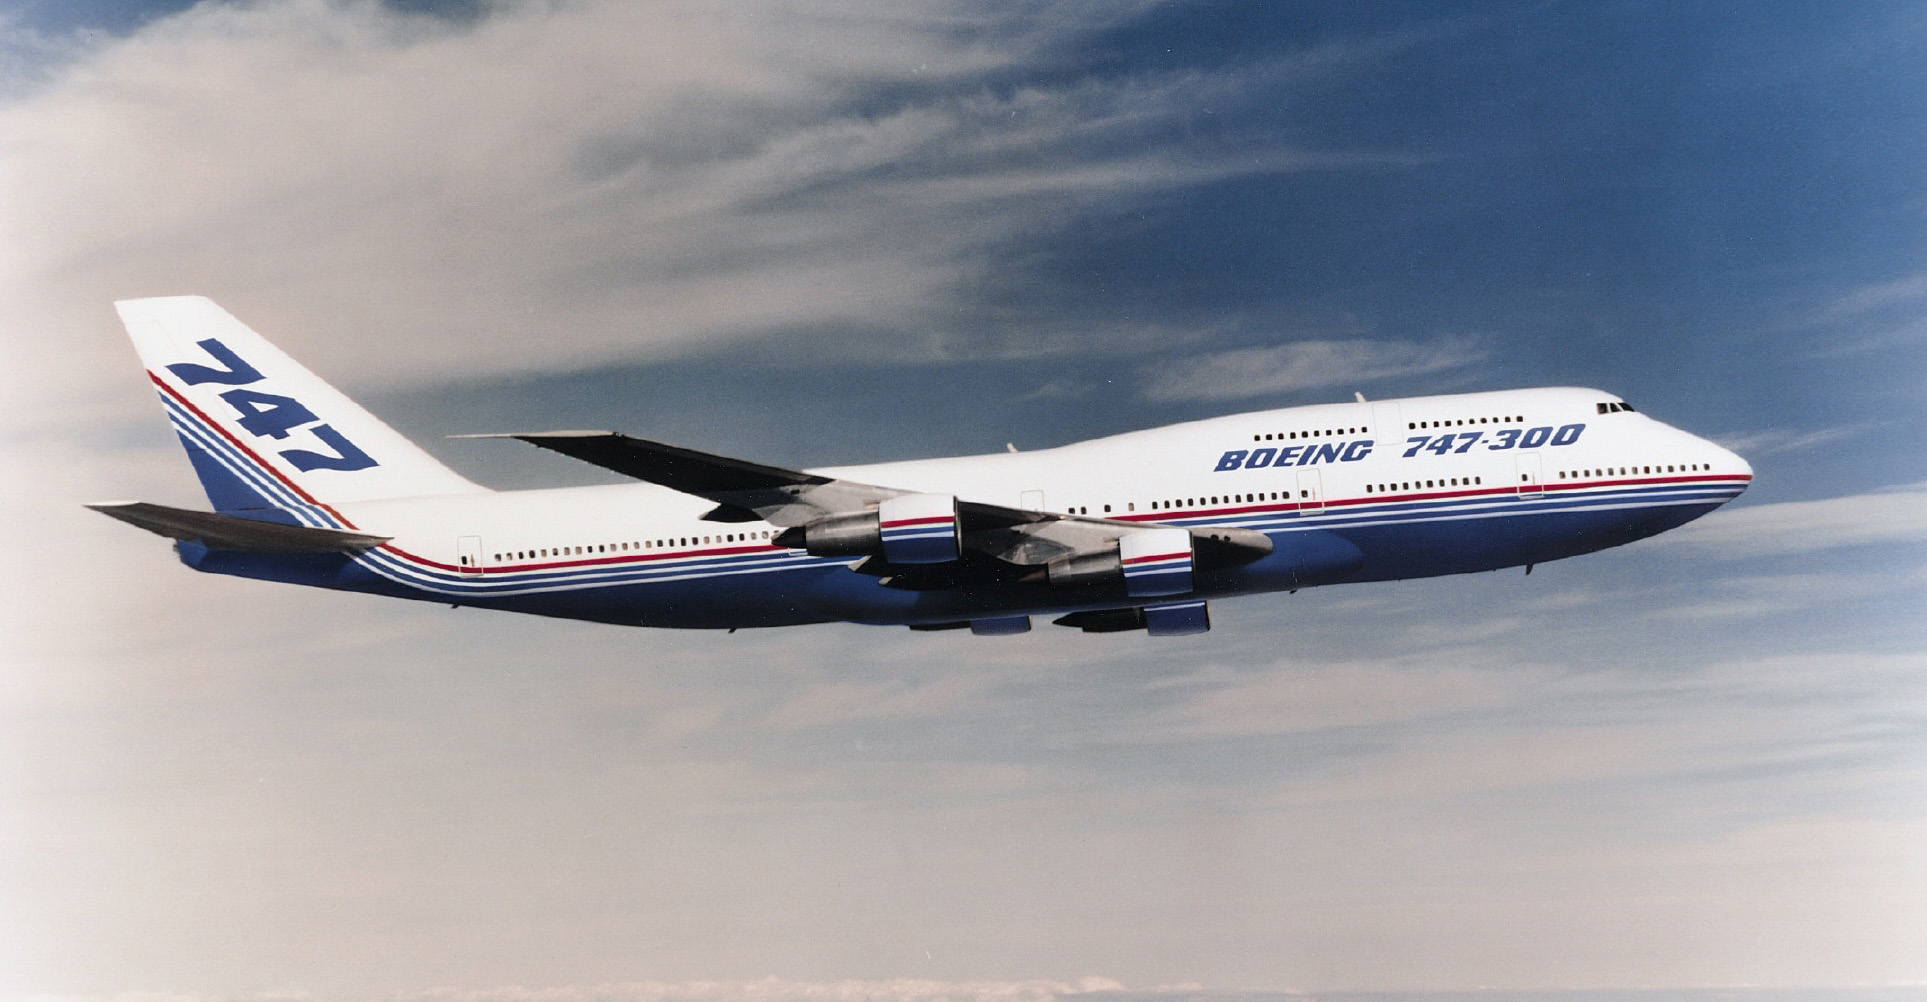 Самый продолжительный полет самолета совершенный боингом 777. Боинг 747. Boeing 747-300. Пассажирский самолет Боинг 747. Боинг 747 Американ Эйрлайнс.